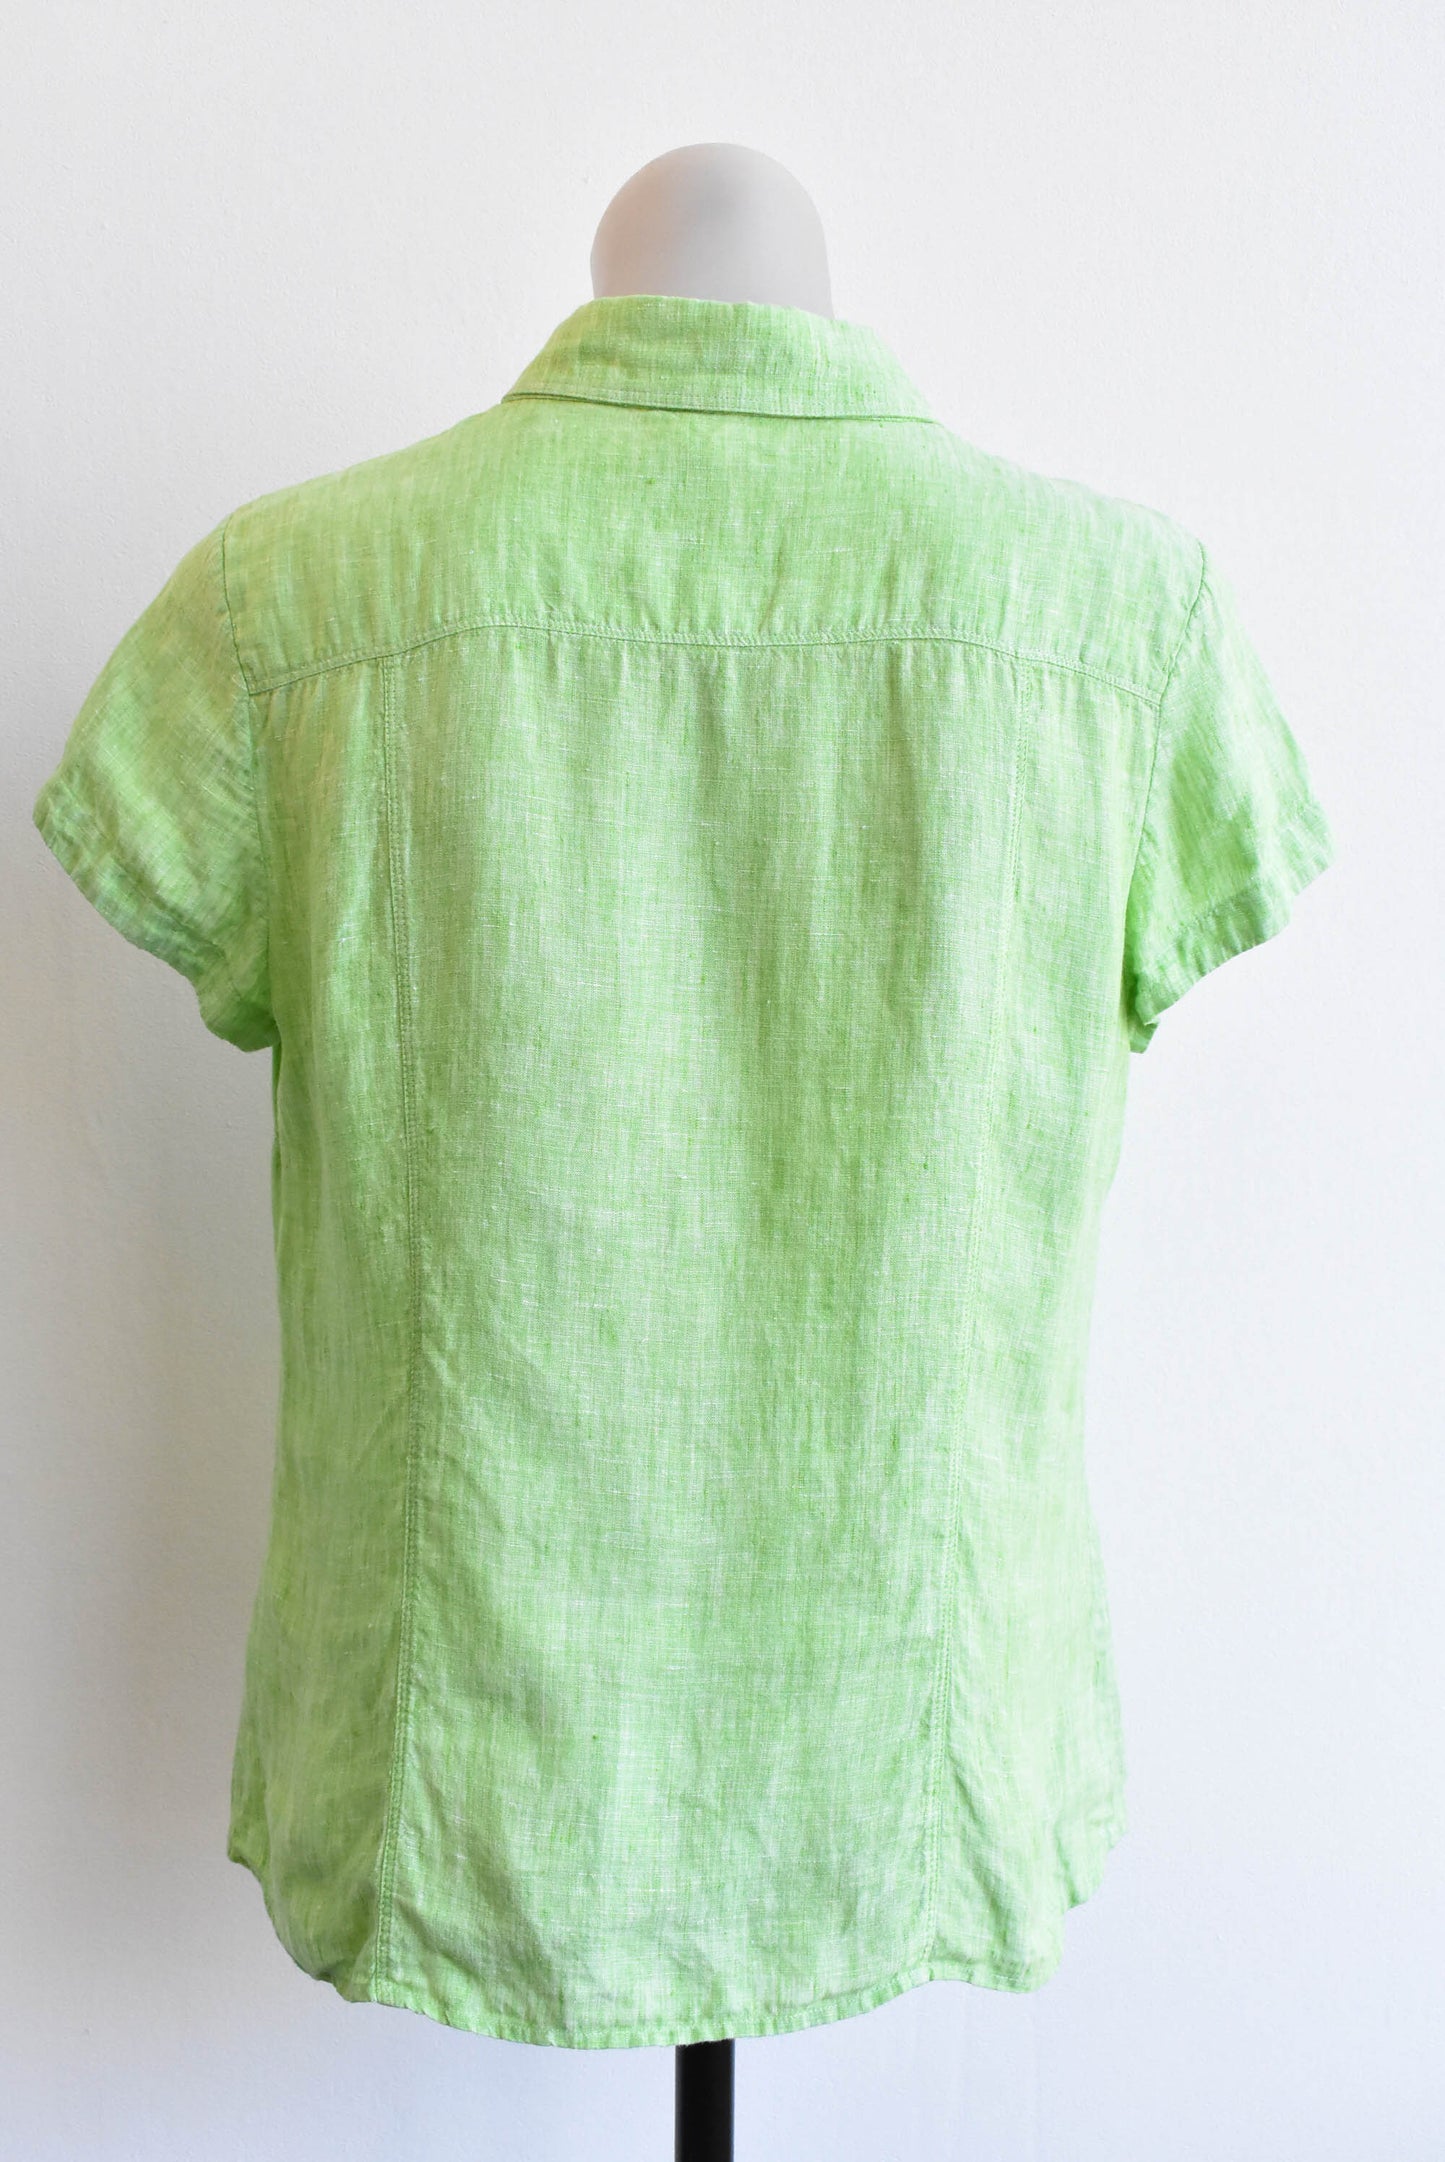 Sportscraft lime green linen short-sleeved shirt, size S